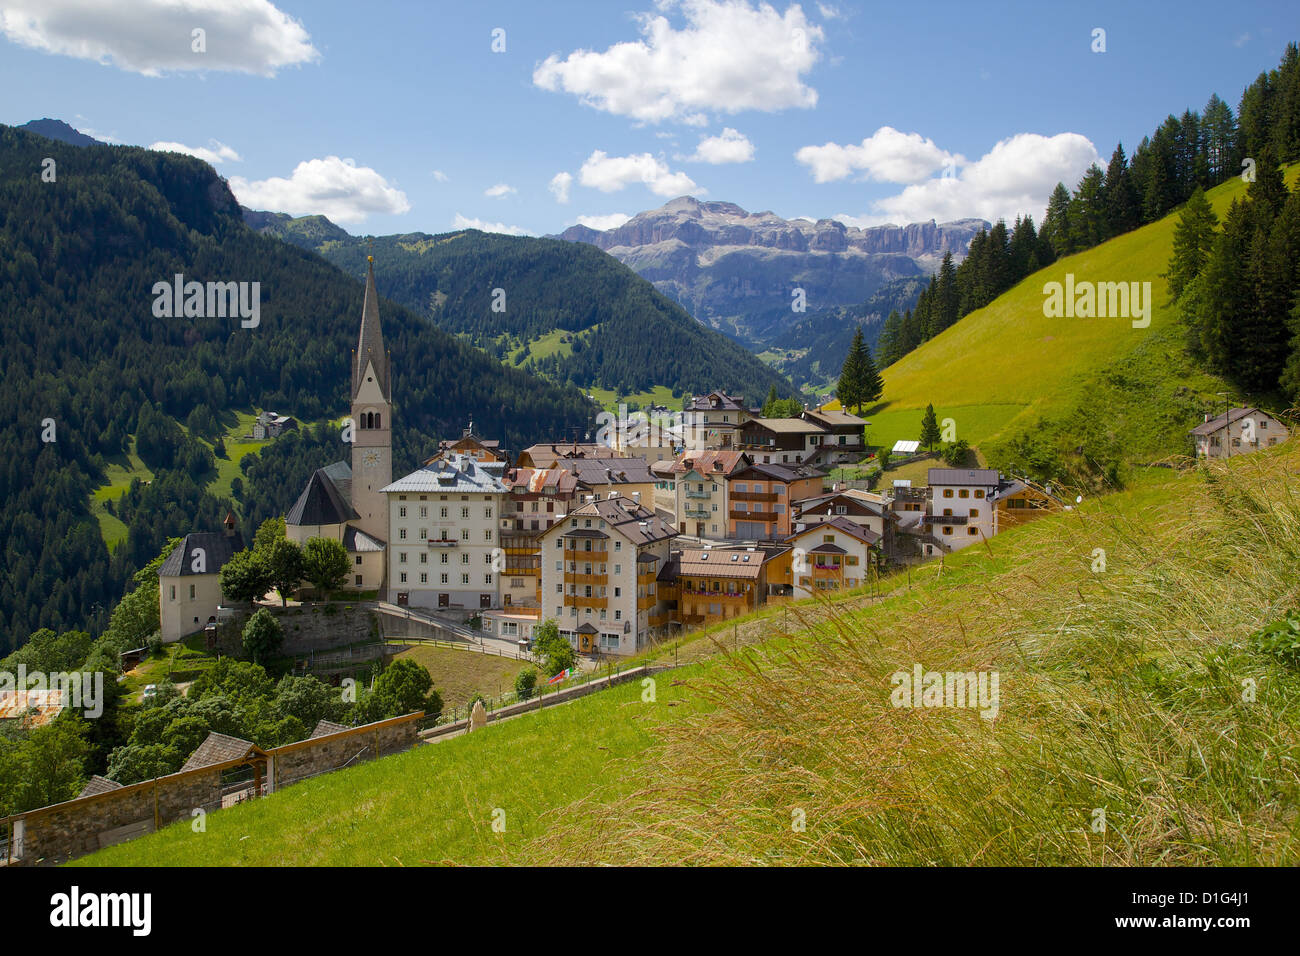 Vue sur le village et l'église, la Plie Pieve, La province de Belluno, Dolomites, Italie, Europe Banque D'Images